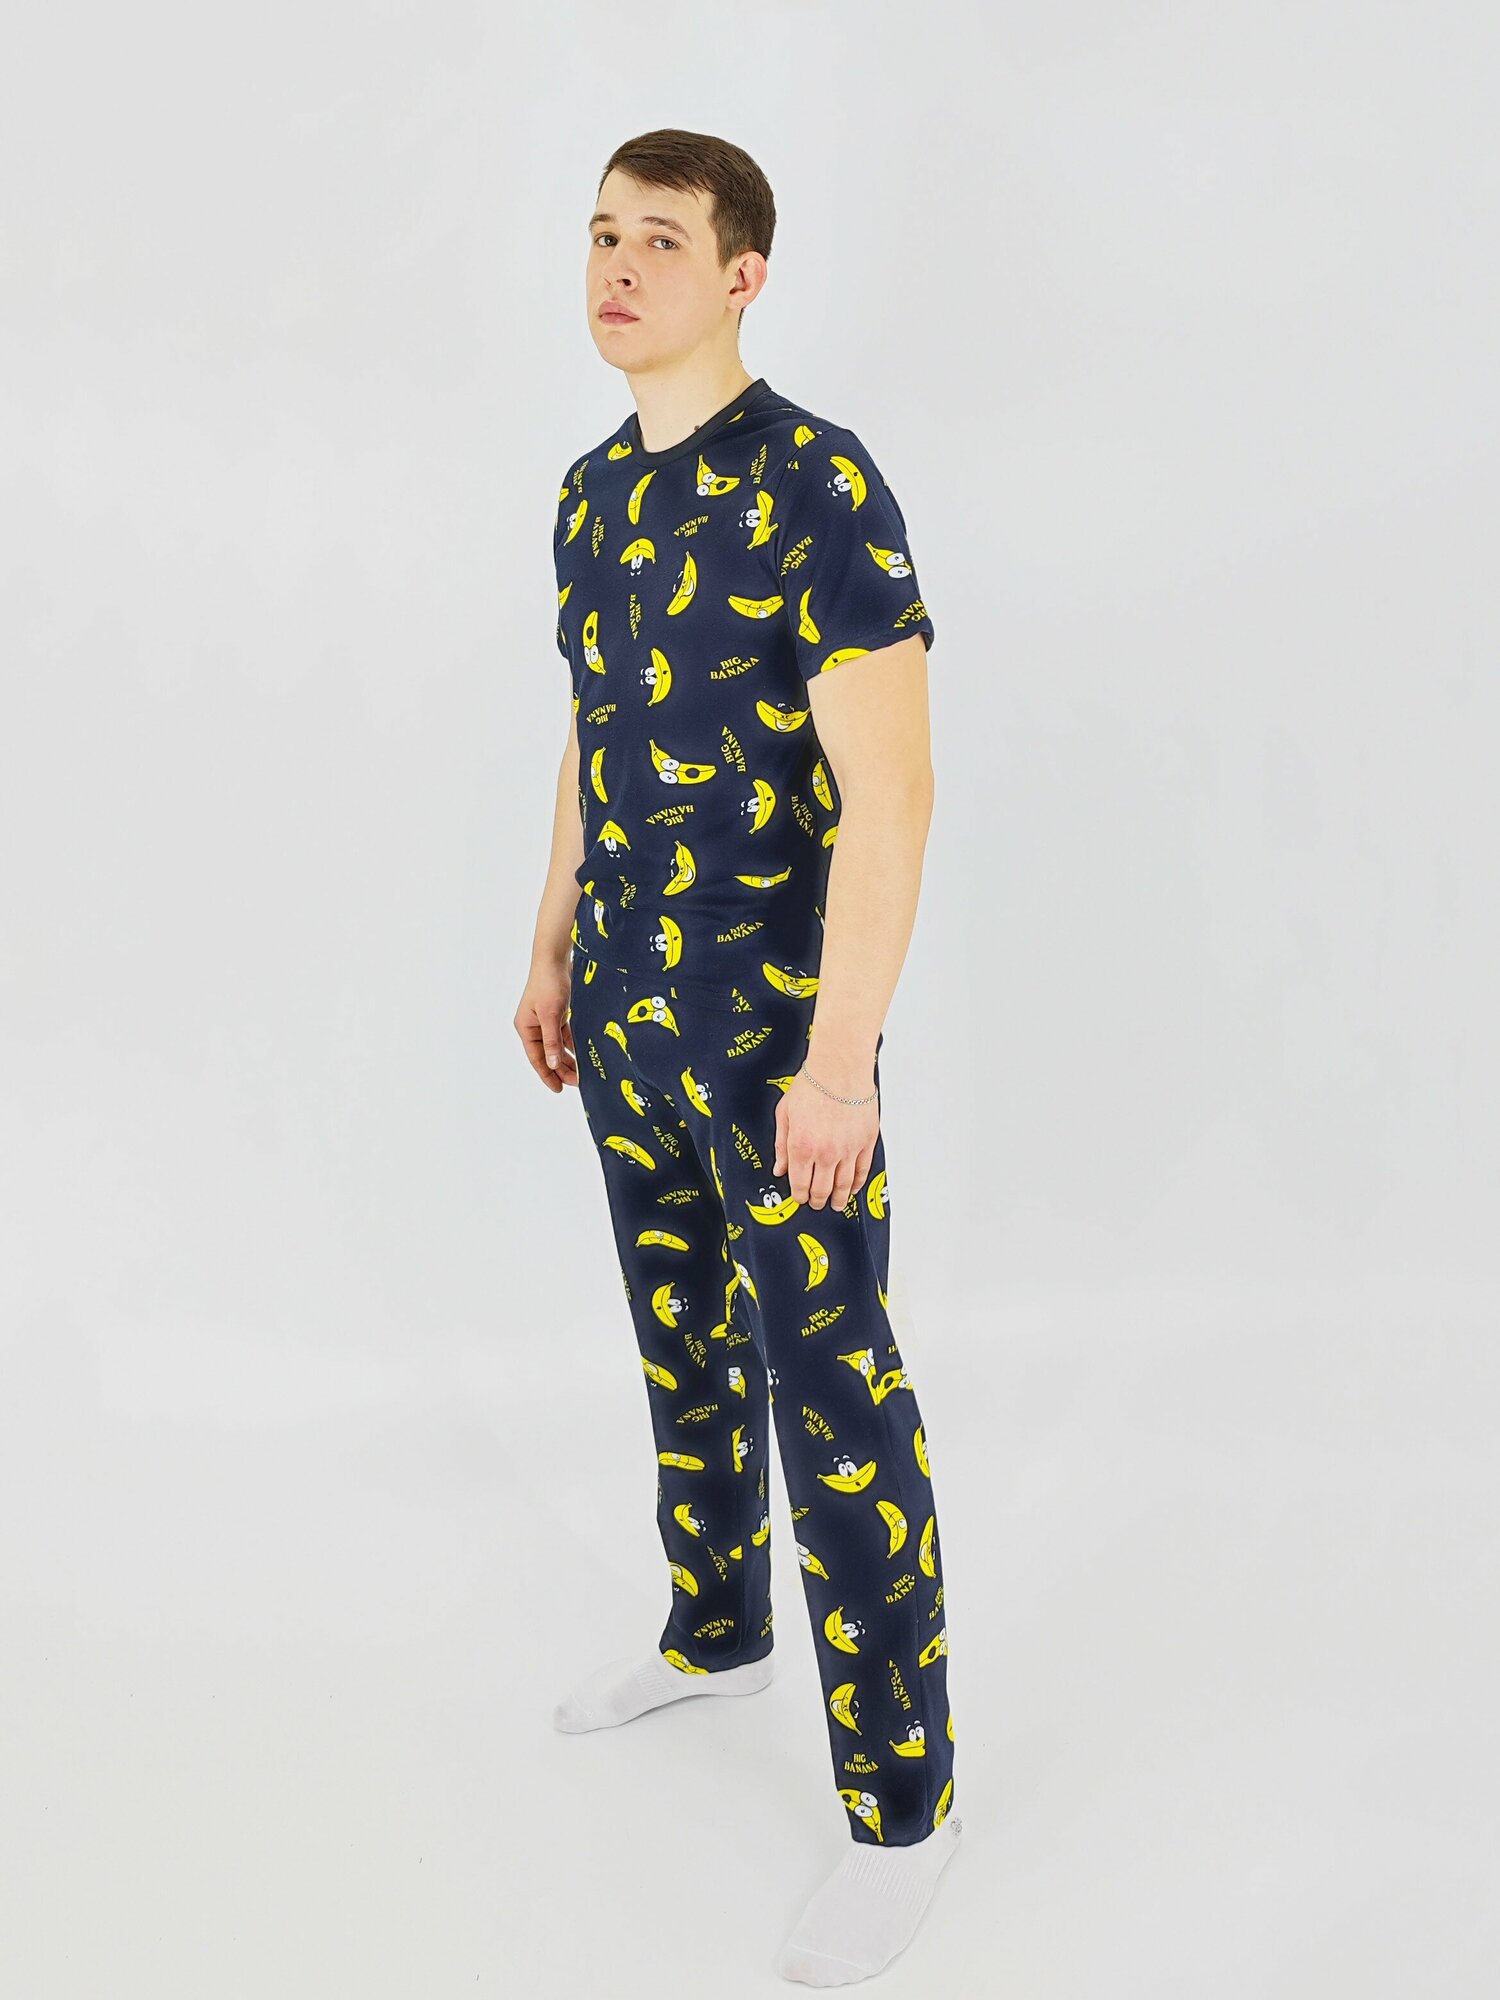 Мужская пижама, мужской пижамный комплект ARISTARHOV, Футболка + Брюки, Бананчик, синий желтый, размер 54 - фотография № 5